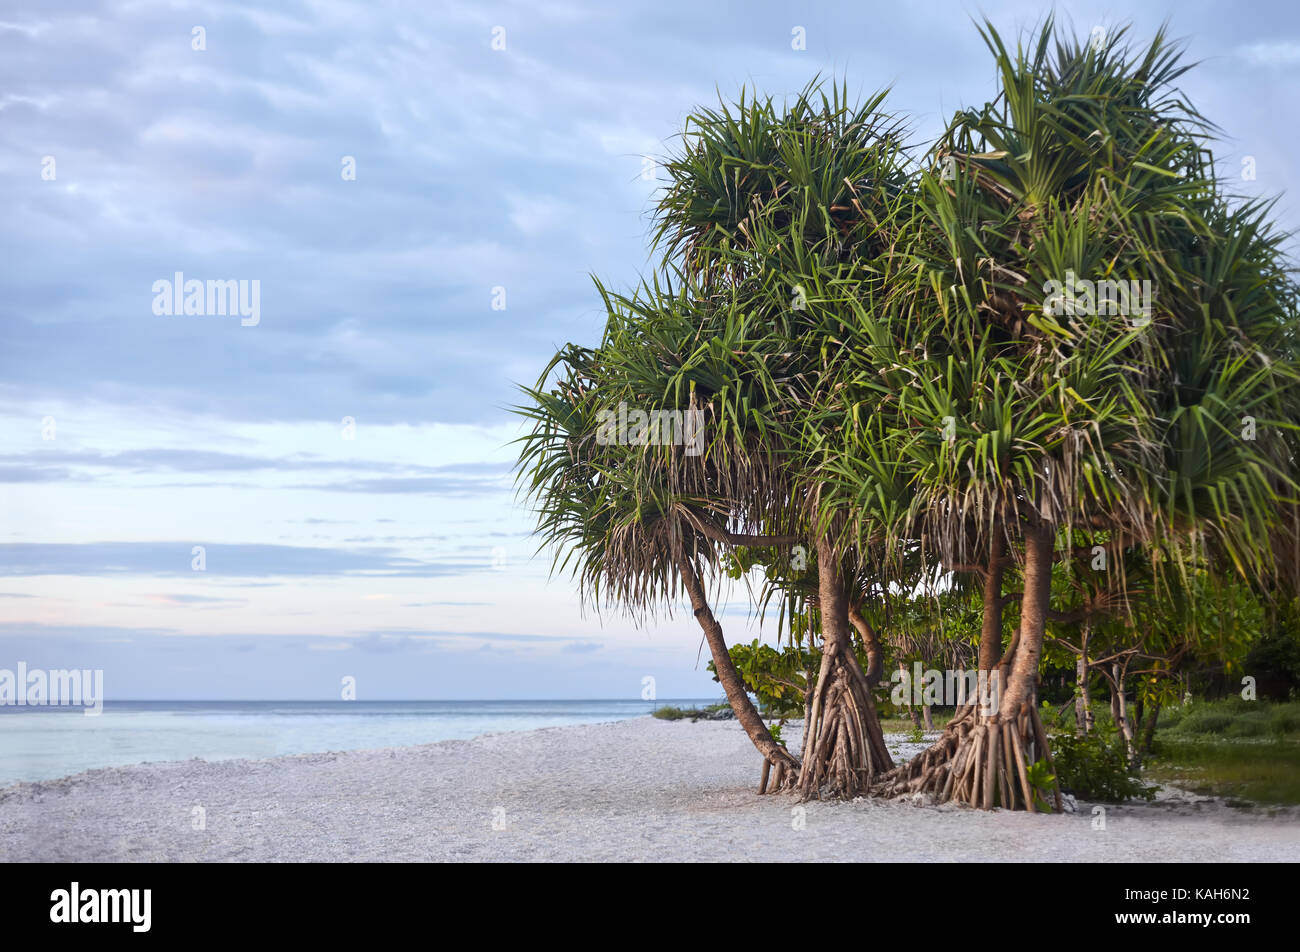 Paradise beach on the tropical island Stock Photo